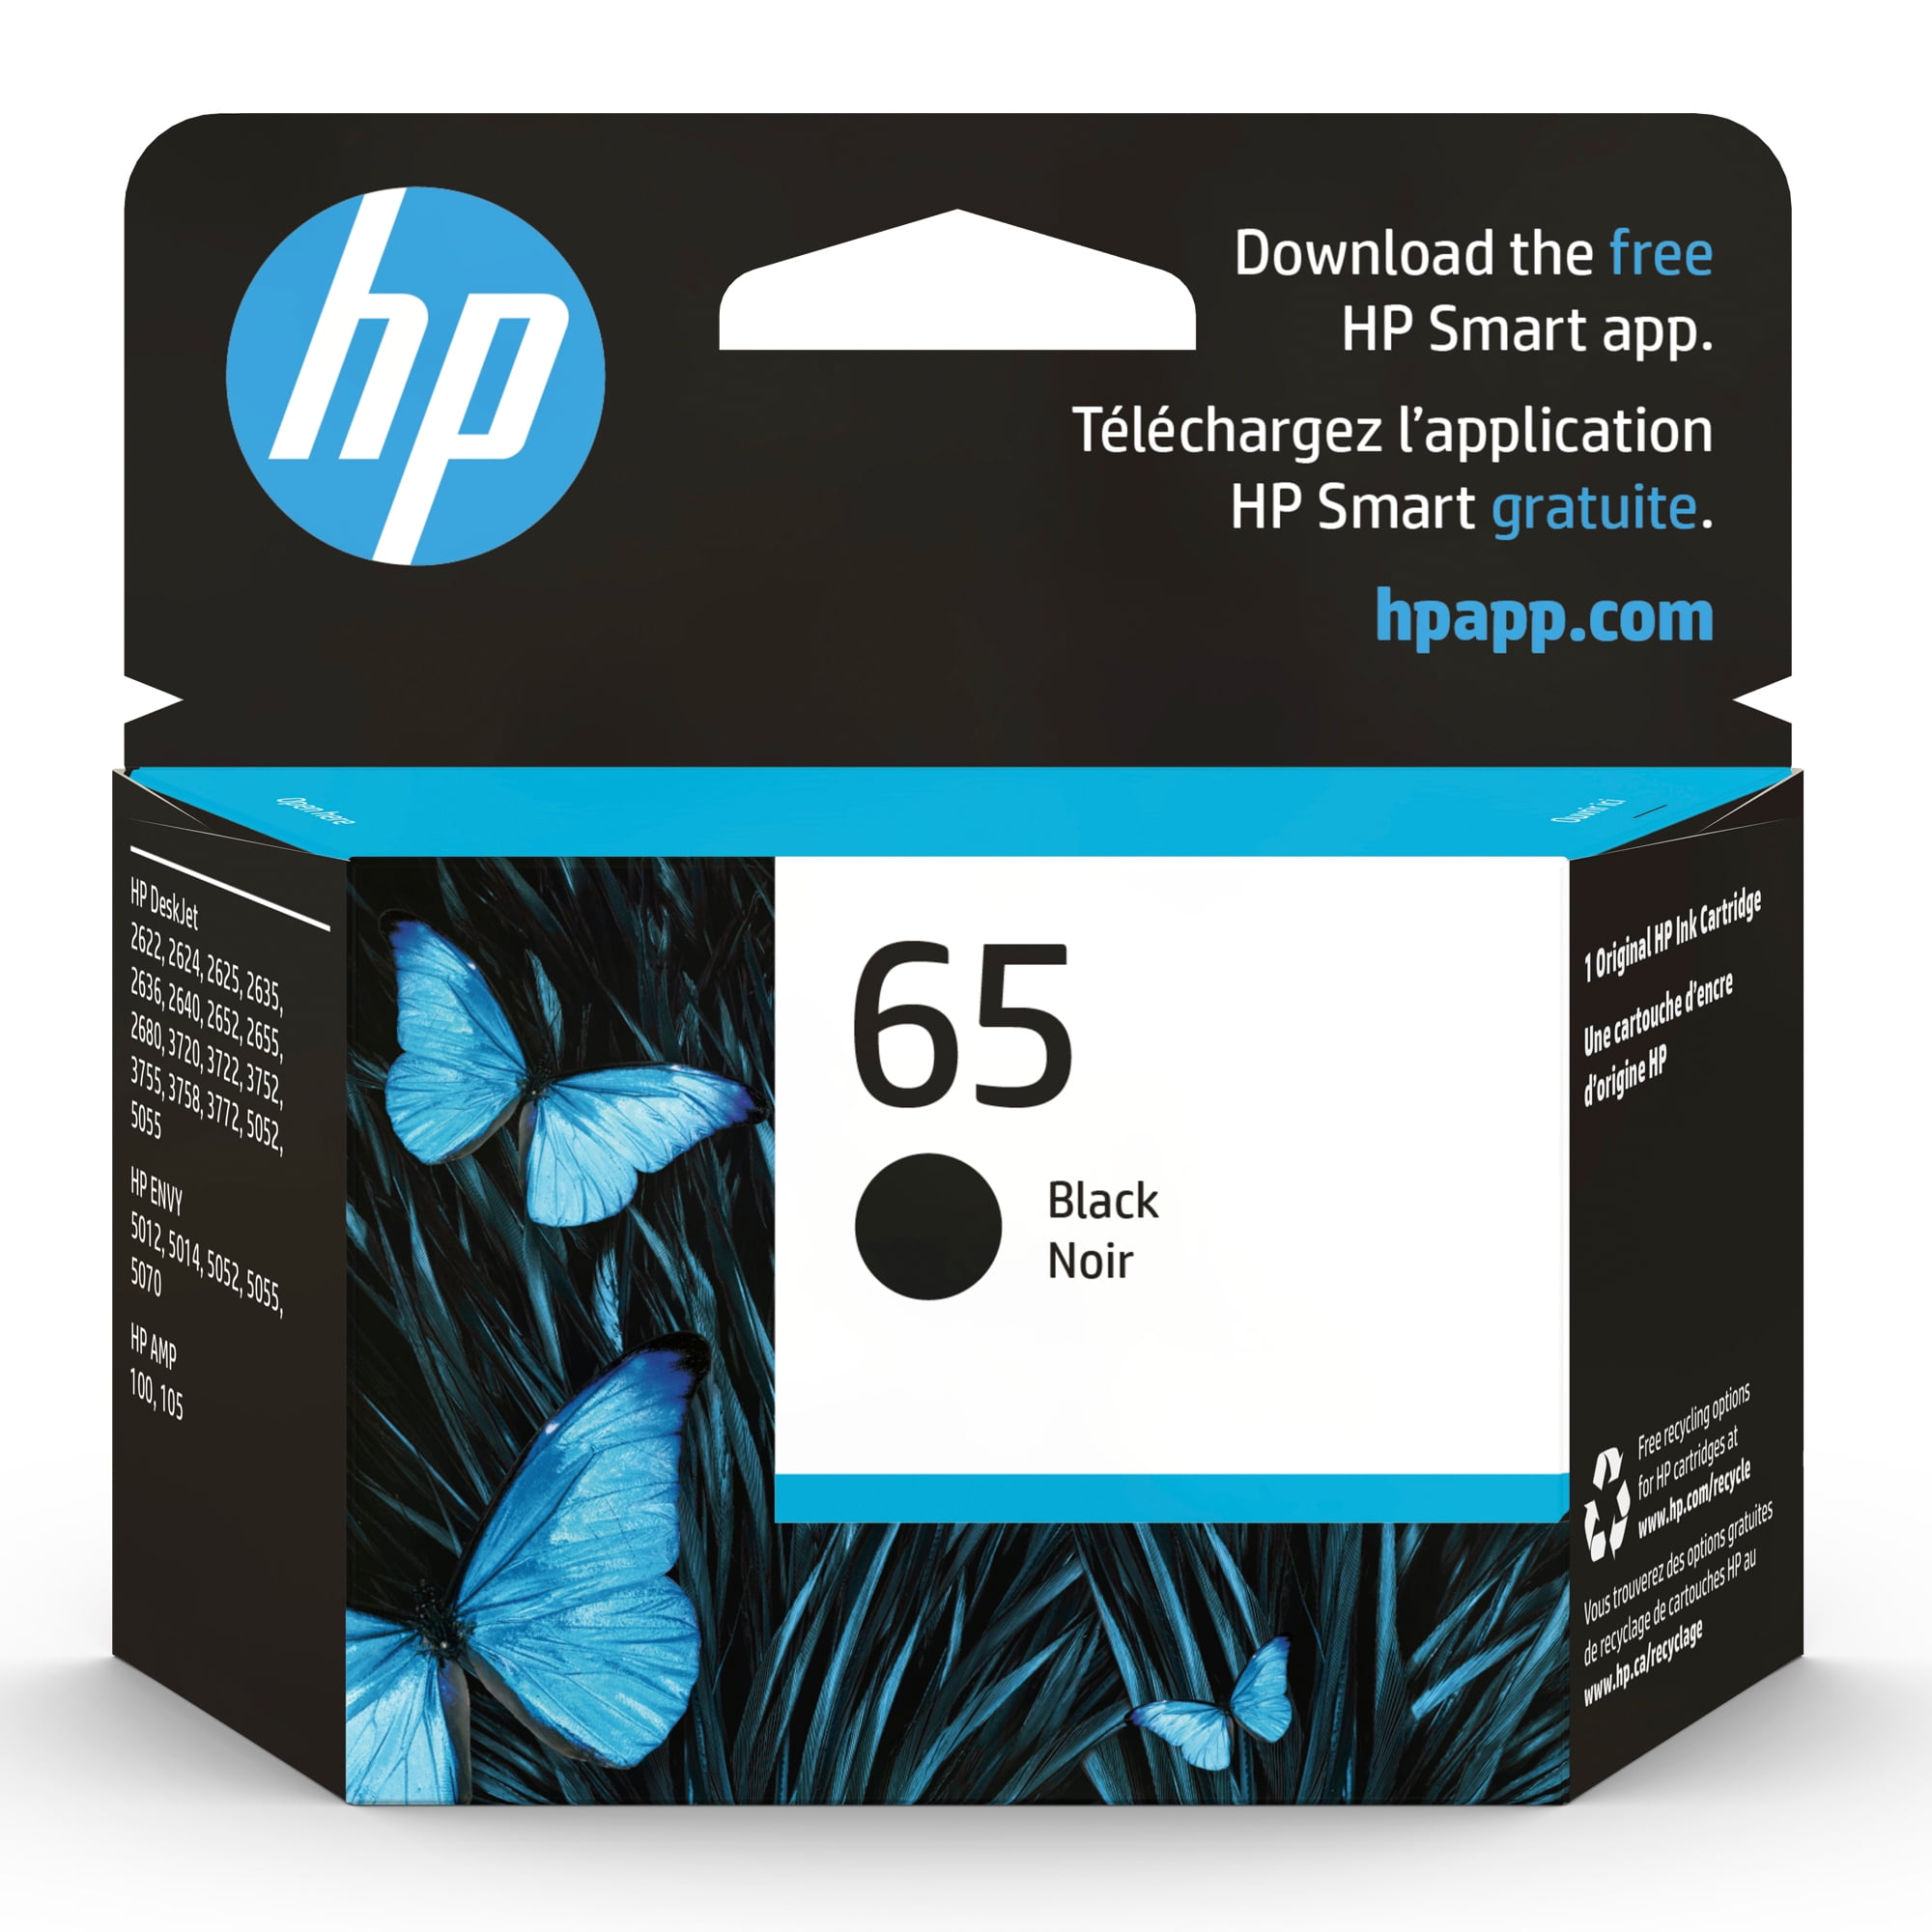 HP 305 Ink Cartridge Black & Colour Refill Kit For HP DeskJet Plus